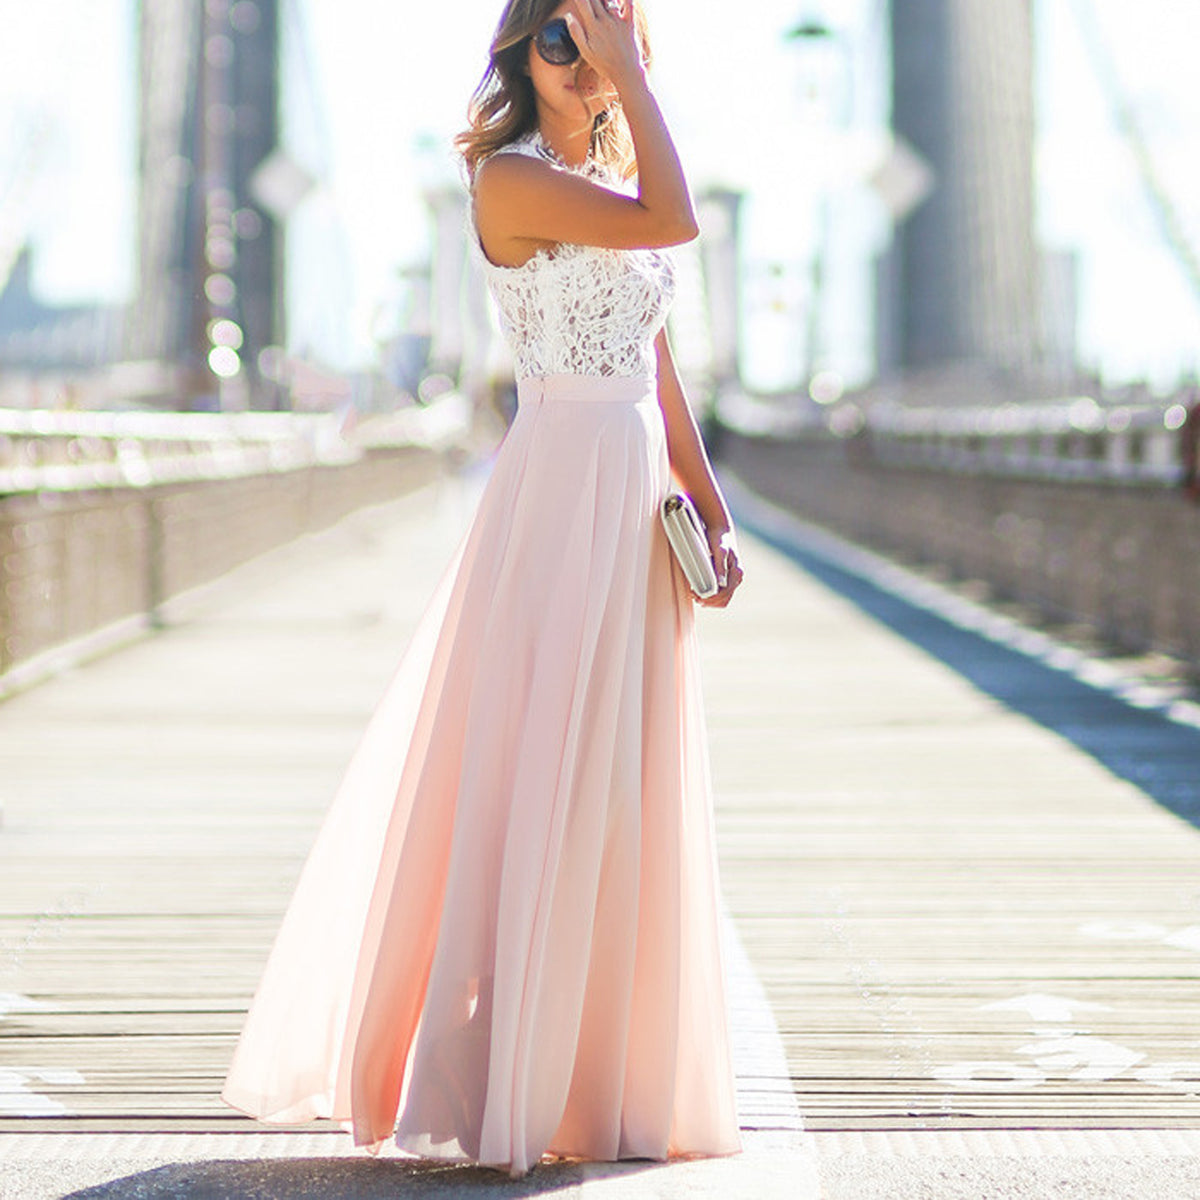 Ellisia White Lace Chiffon Skirt Long Maxi Dress – Glamanti Beauty